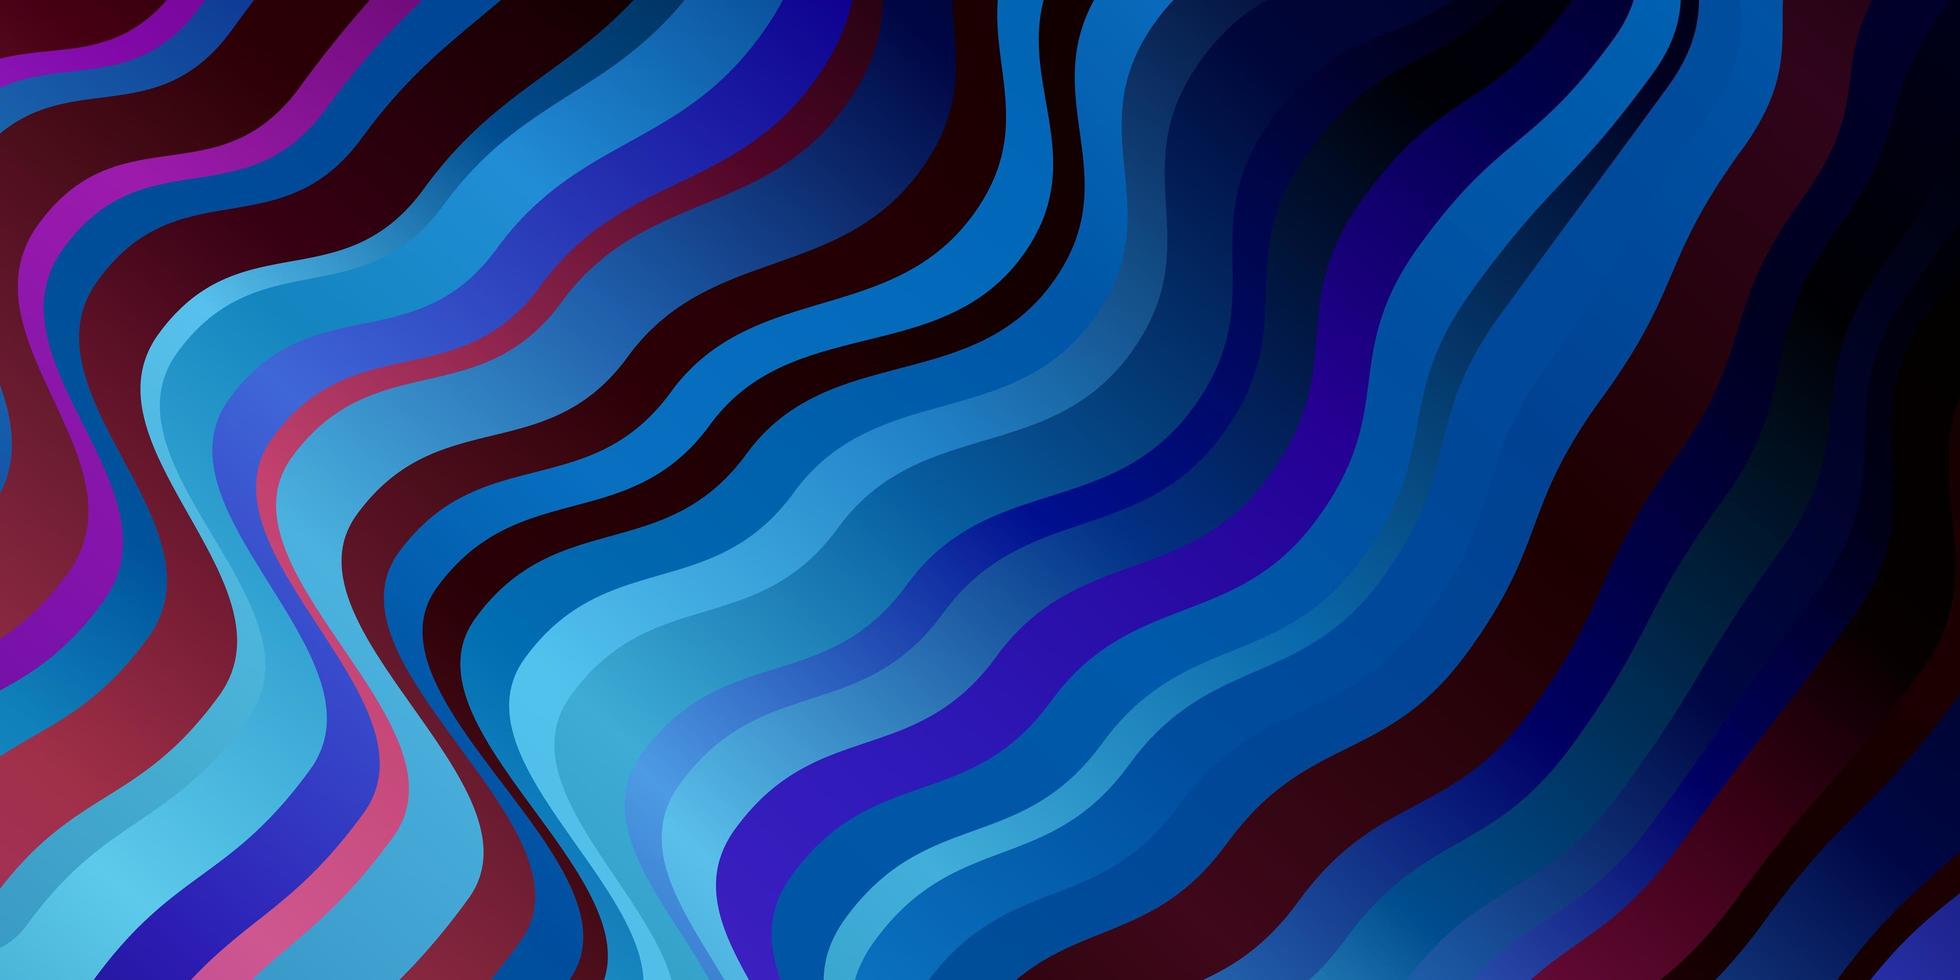 mörkblå, röd vektorbakgrund med bågar. vektor